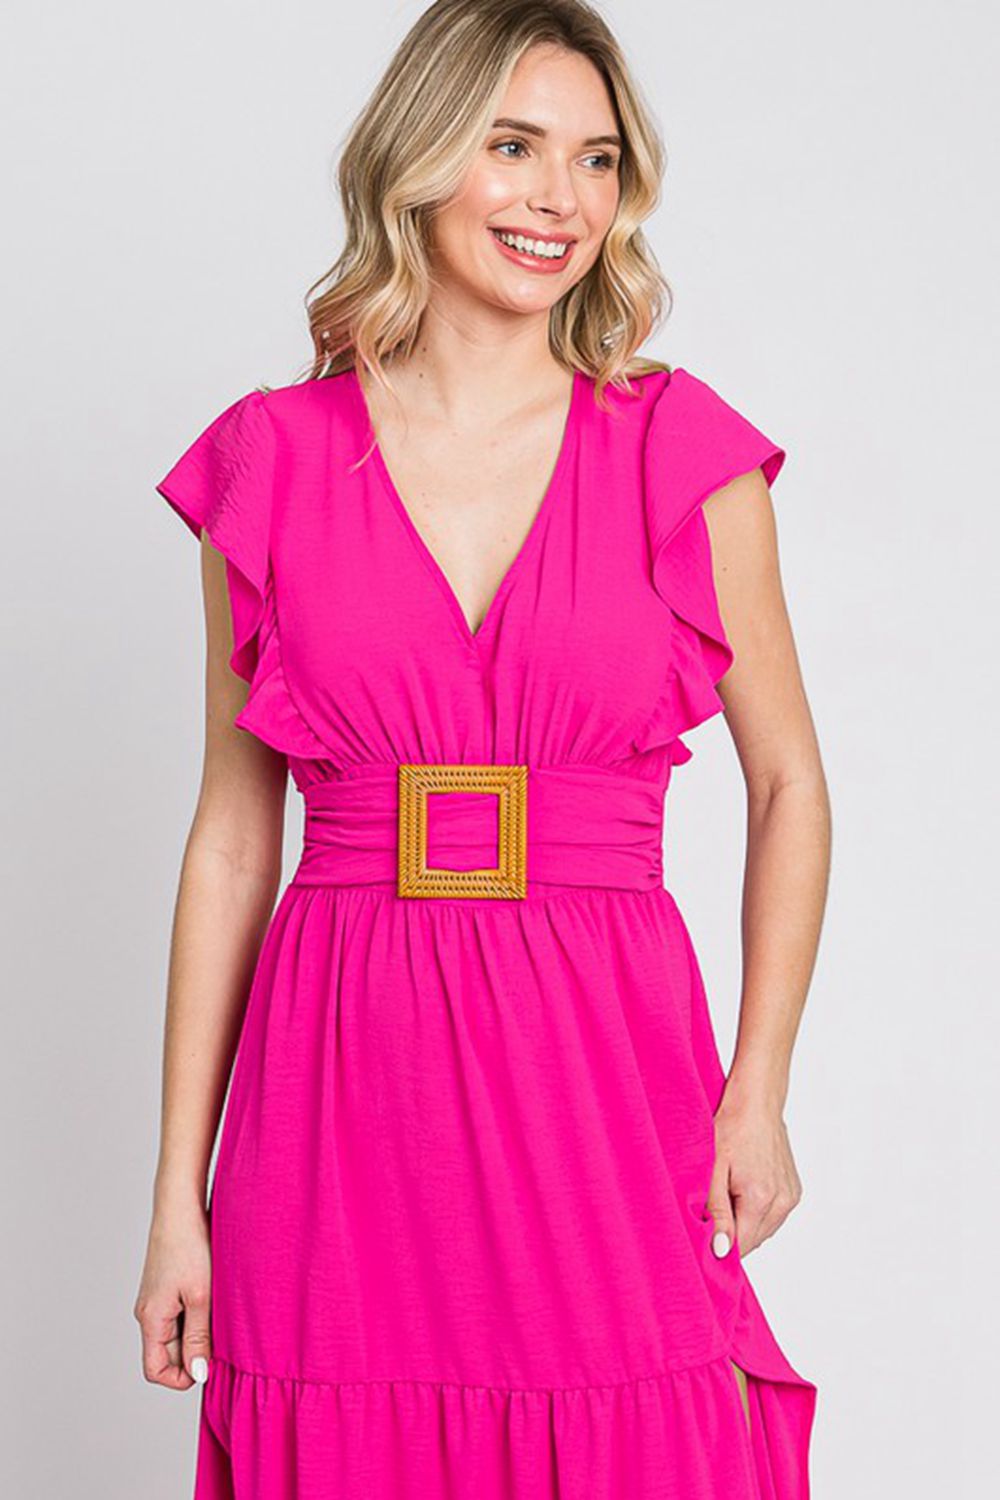 GeeGee Fancy Fizz Plus Size Tiered Side Slit Maxi Dress - BloomBliss.com